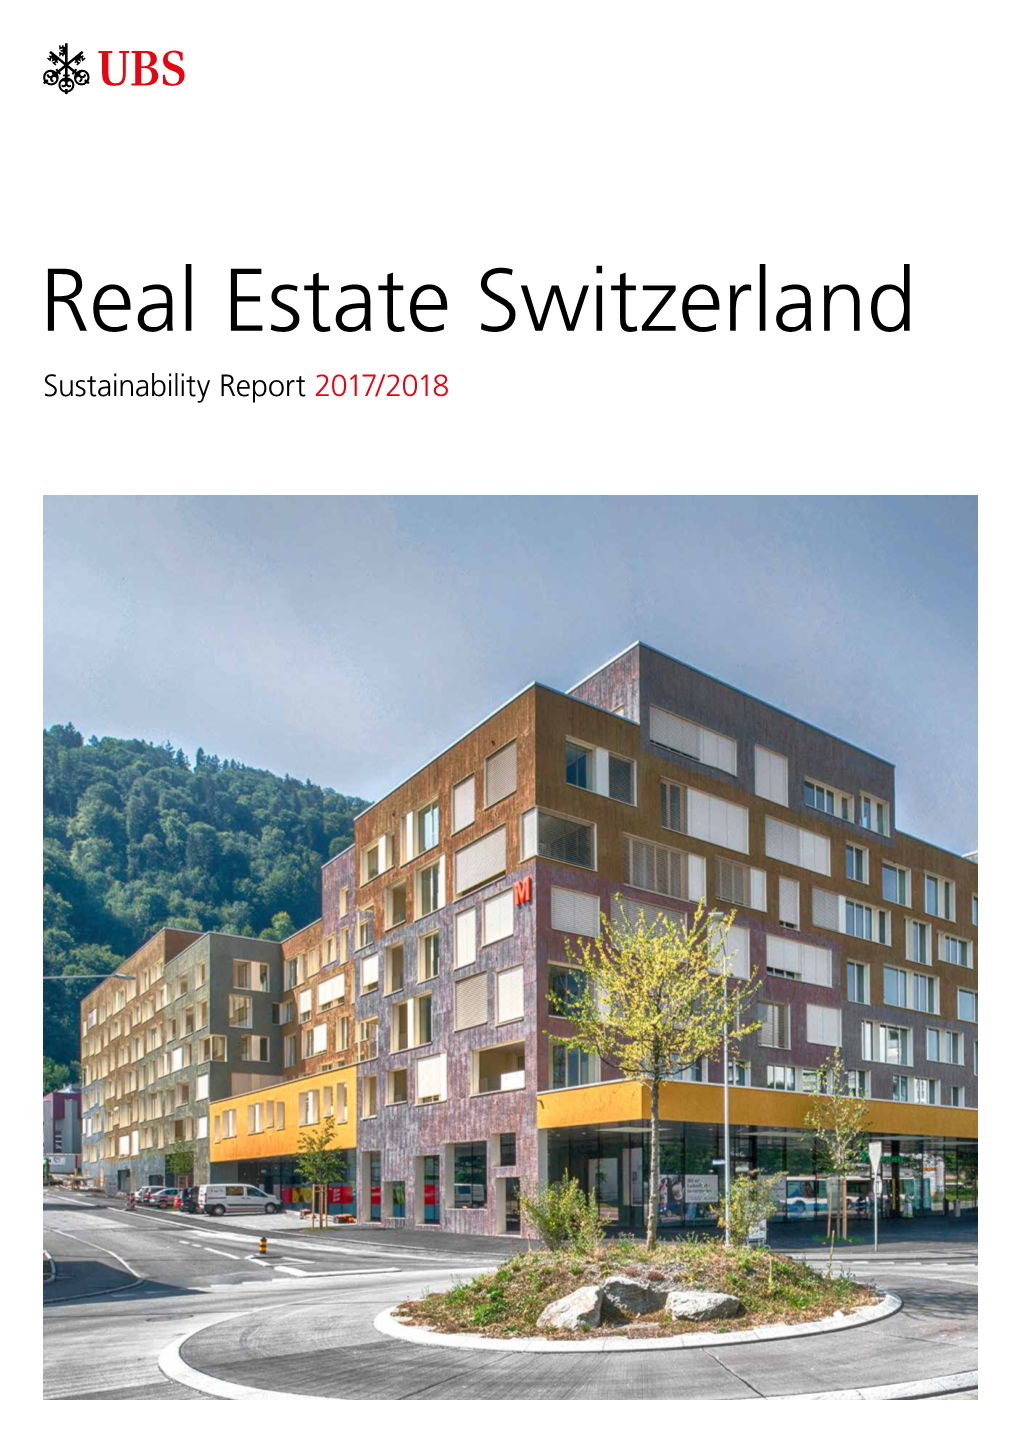 UBS Real Estate Switzerland Sustainability